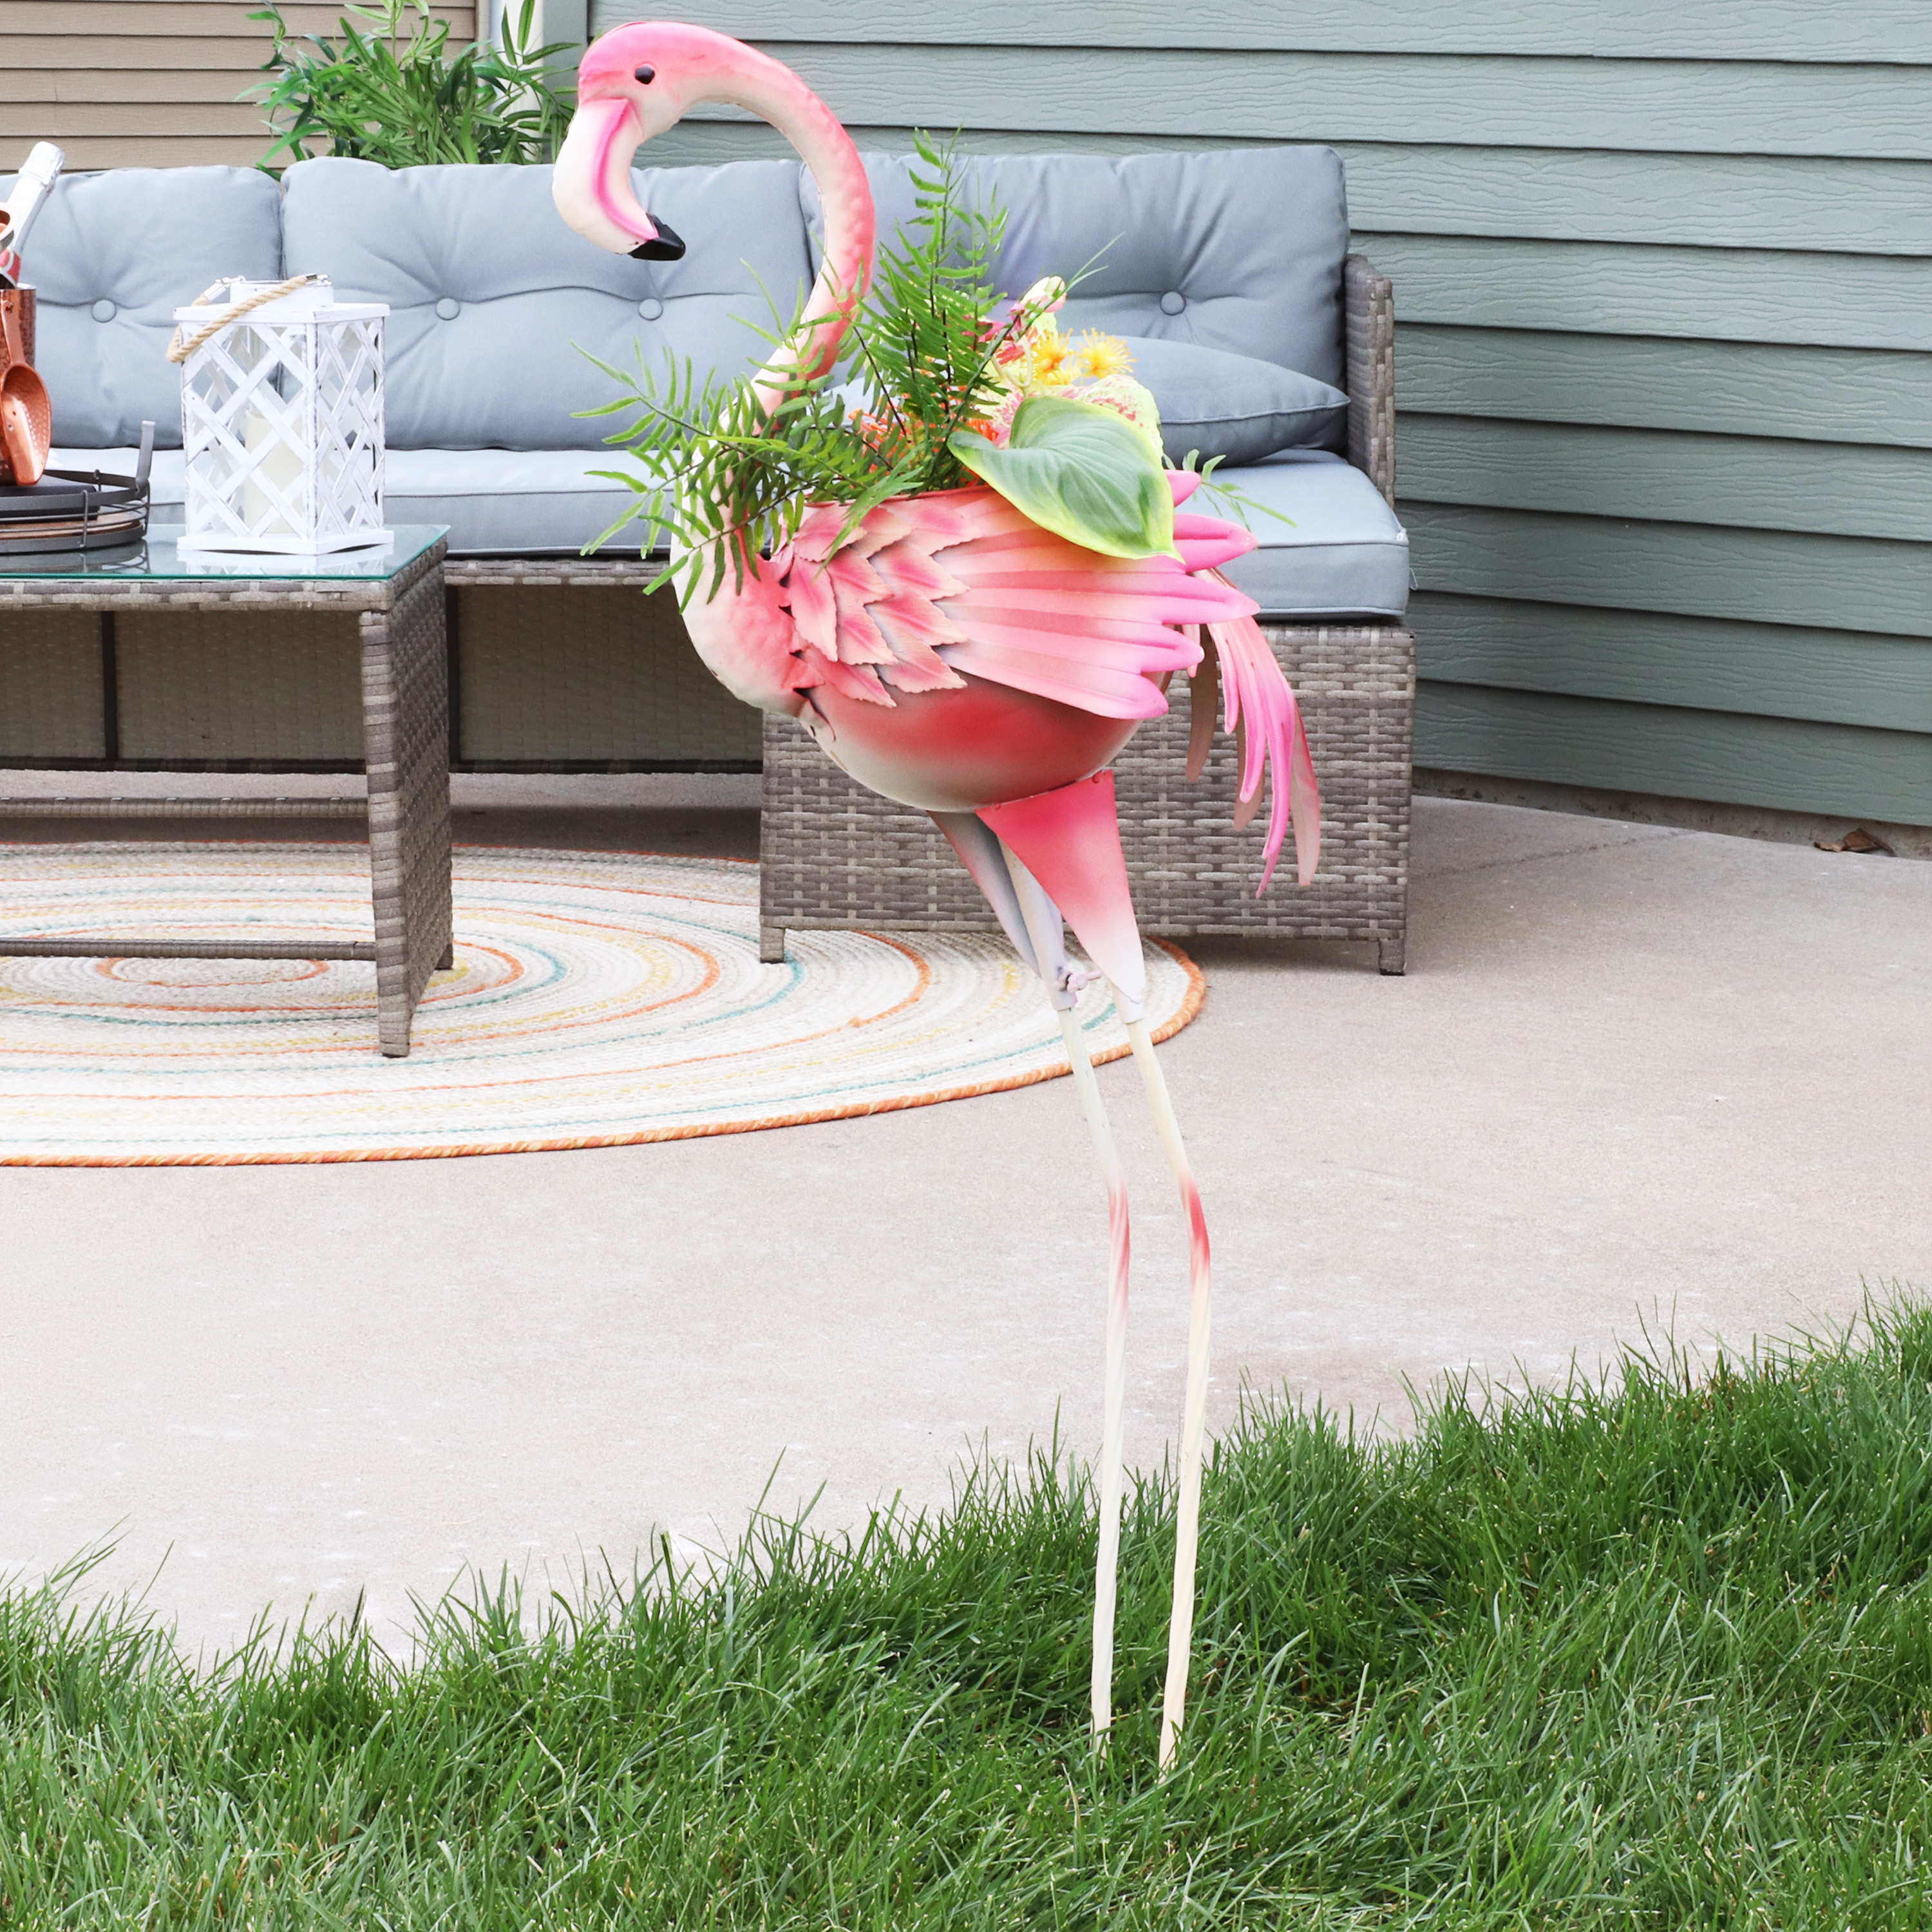 Sunnydaze Pink Flamingo Metal Outdoor Garden Statue with Flowerpot - image 3 of 11